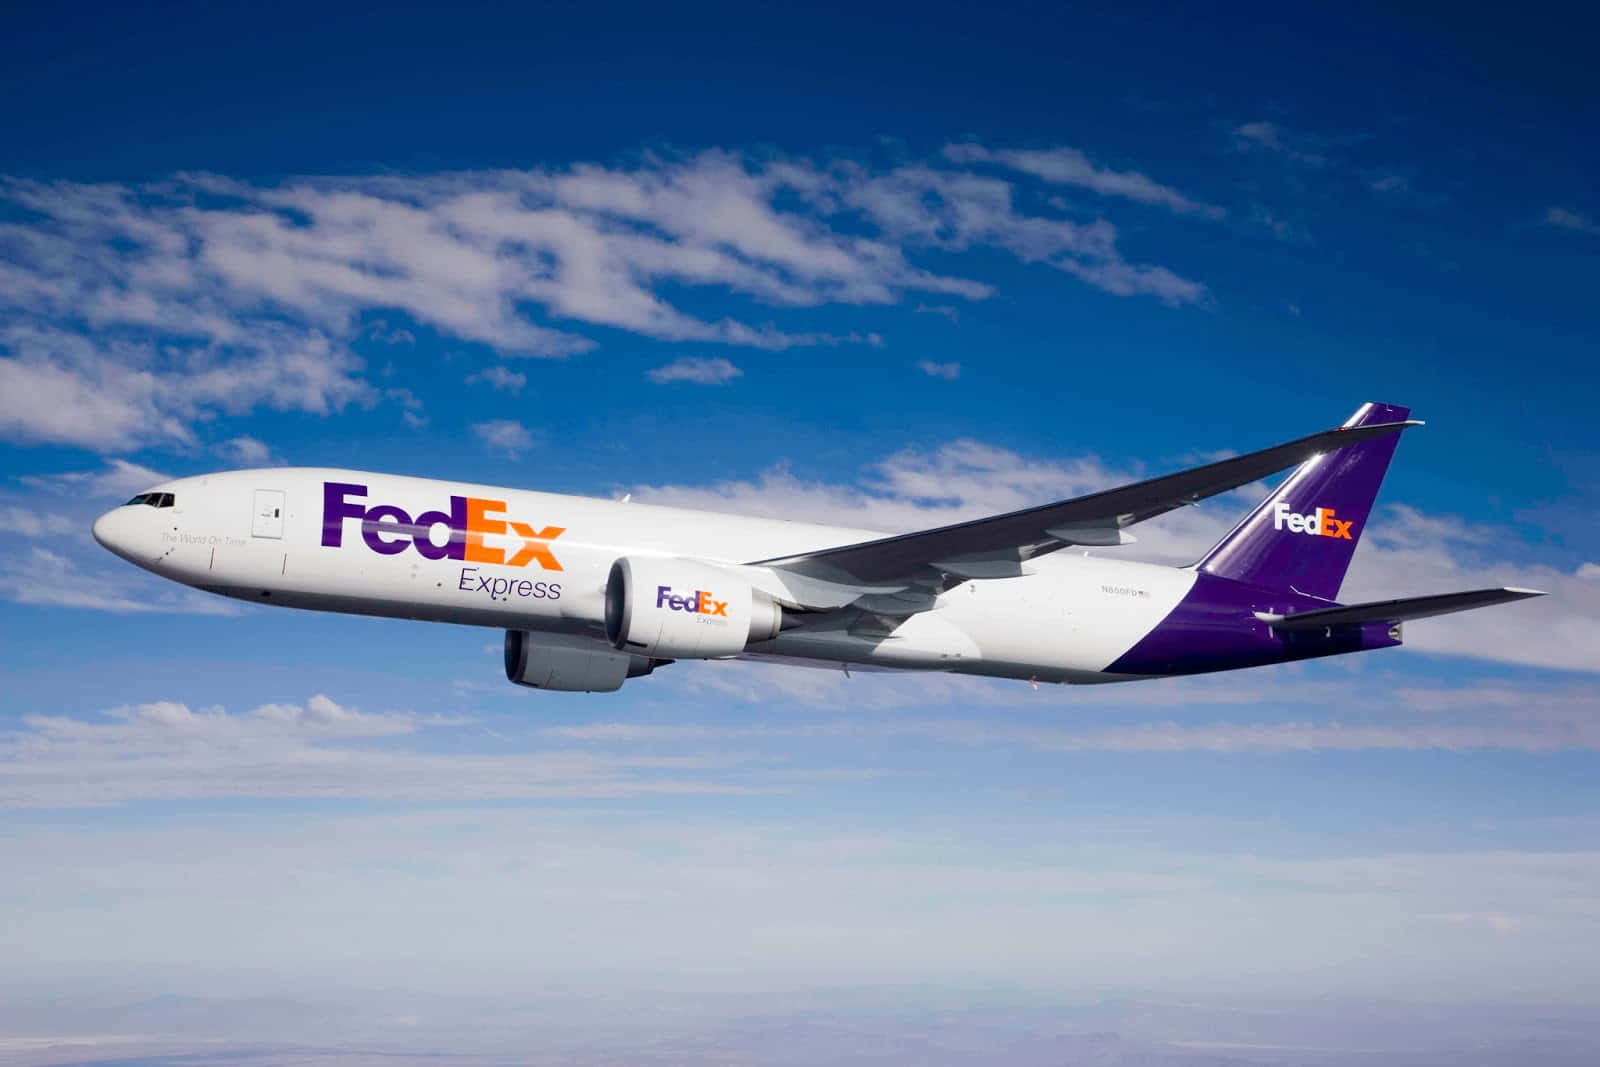 Fedexboeing 787 - Flyg - Flyg - Flyg - Flyg